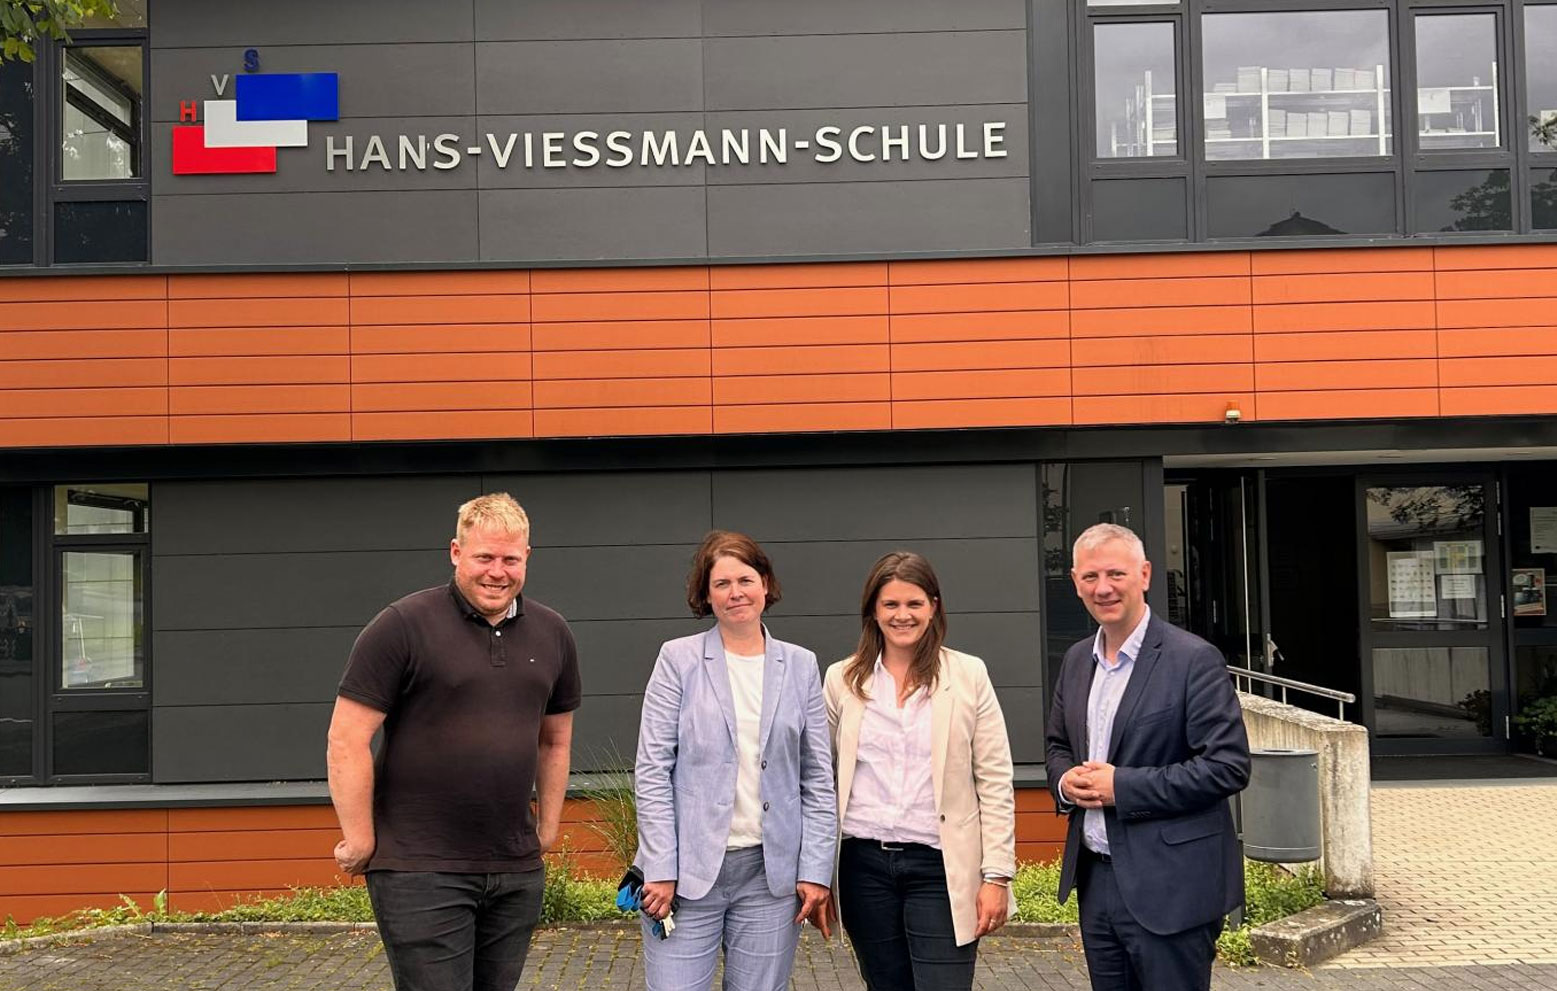 Hans-Viessmann-Schule in Frankenberg öffnet ihre Türen für bildungspolitische Diskussion